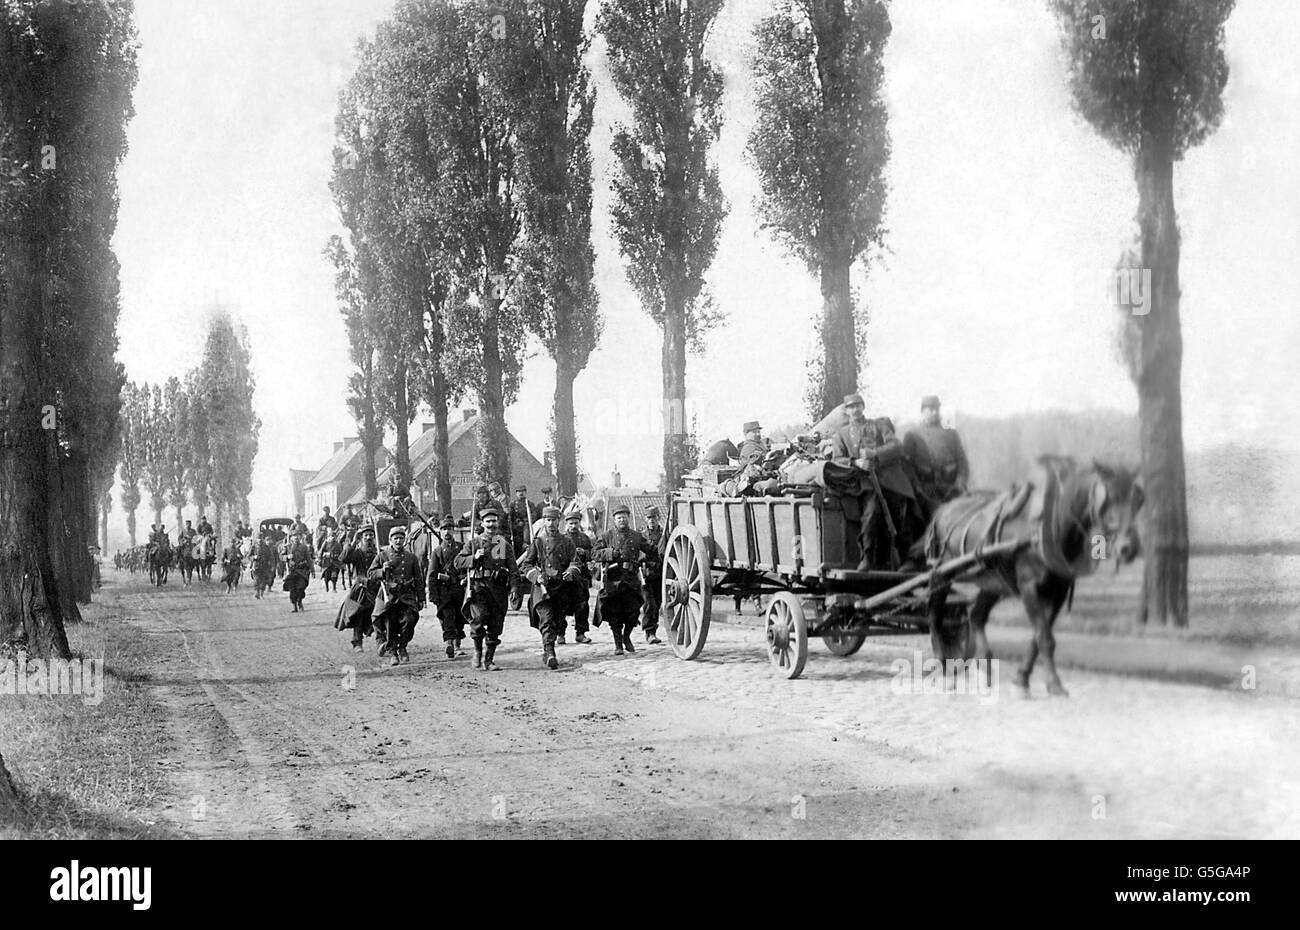 Première Guerre mondiale - Cavalerie française - Douai - France.Troupes françaises et transport sur une route près de Douai en France. Banque D'Images